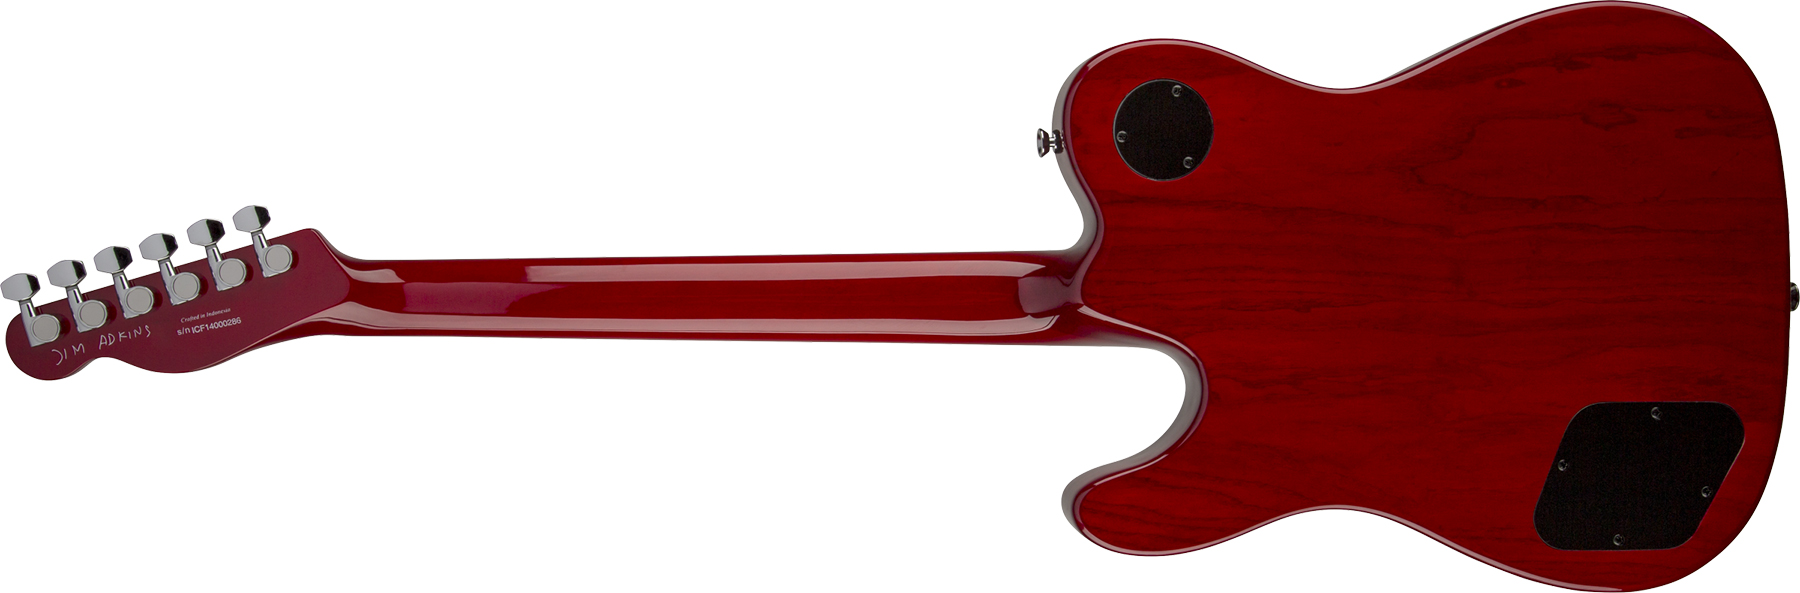 Fender Jim Adkins Tele Ja-90 Mex Signature 2p90 Lau - Crimson Red Transparent - Guitare Électrique Forme Tel - Variation 1